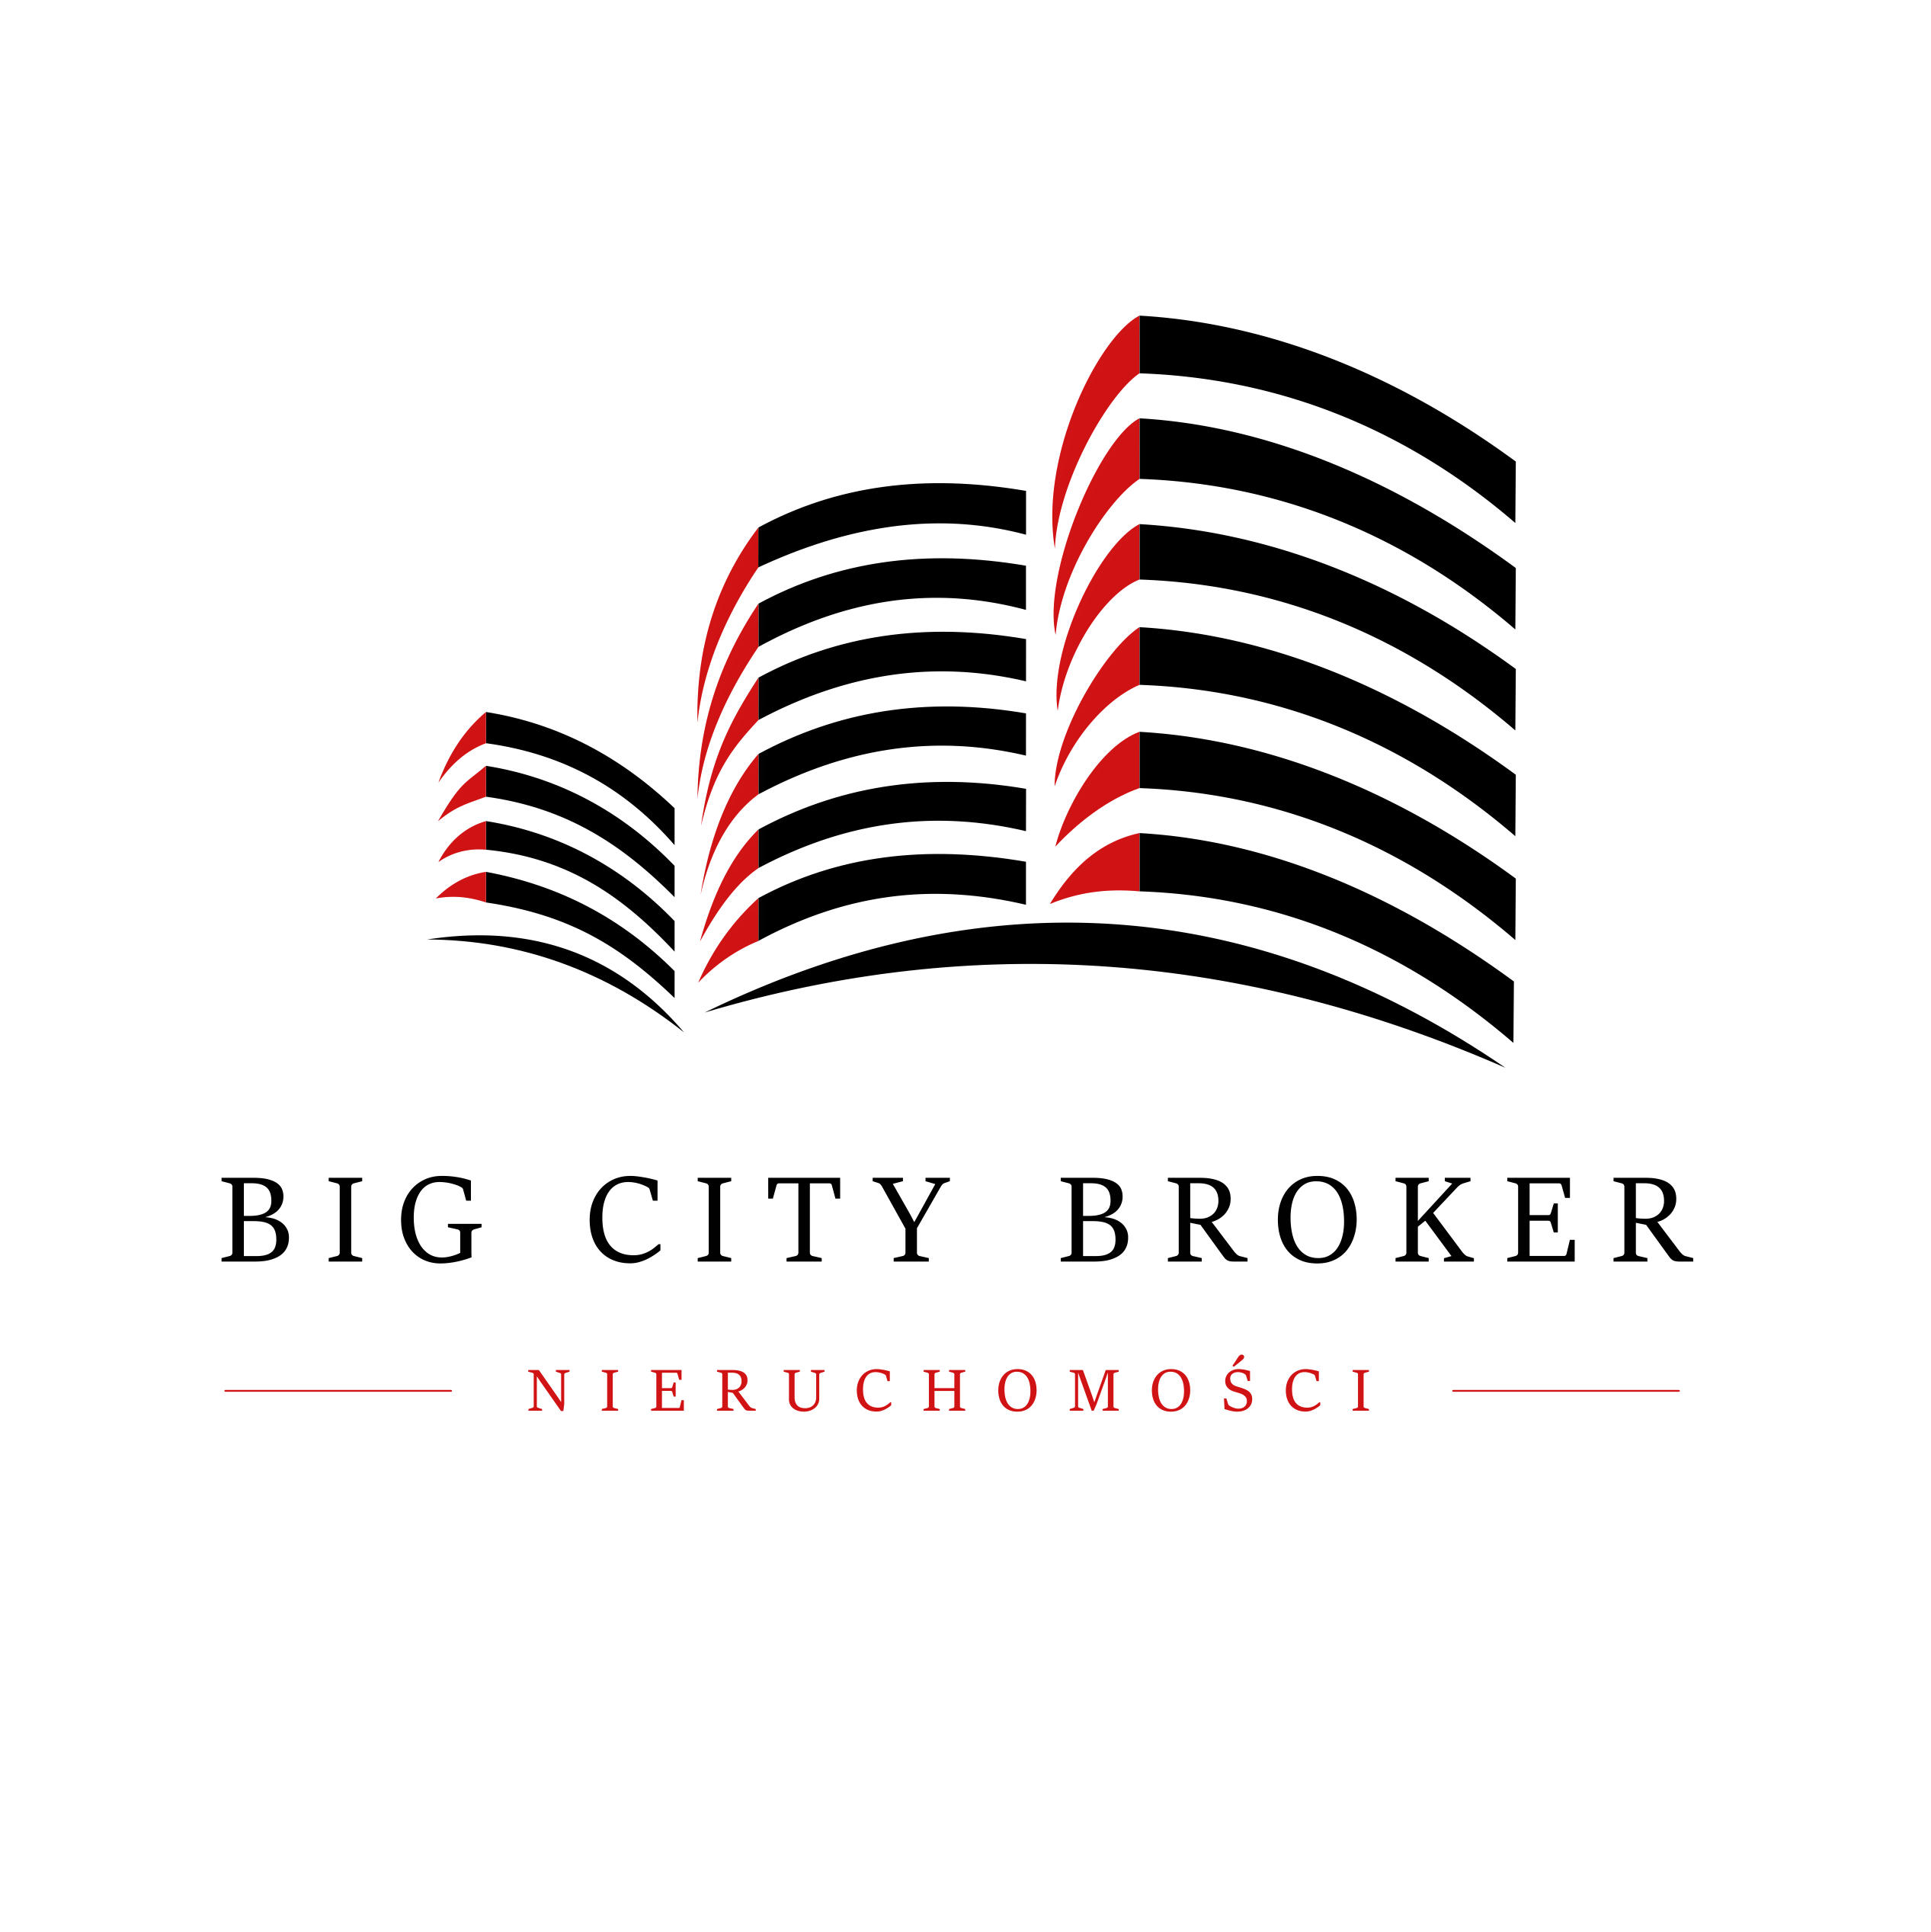 Big city broker